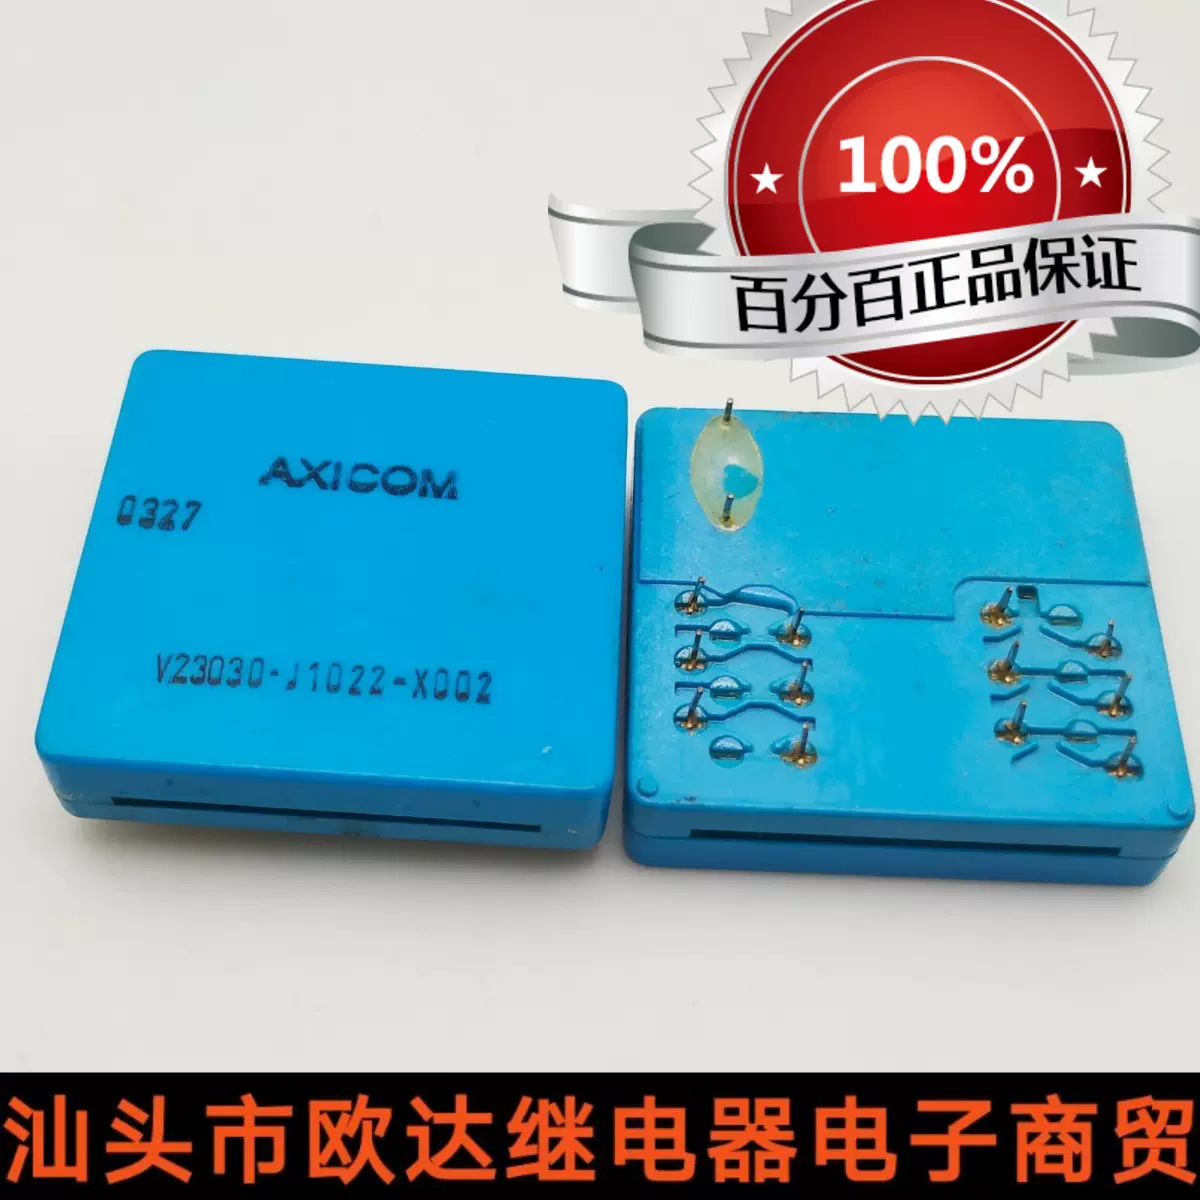 全新散装v23030-J1022-x002 AXiCOM进口继电器现货可直拍14脚0327-Taobao